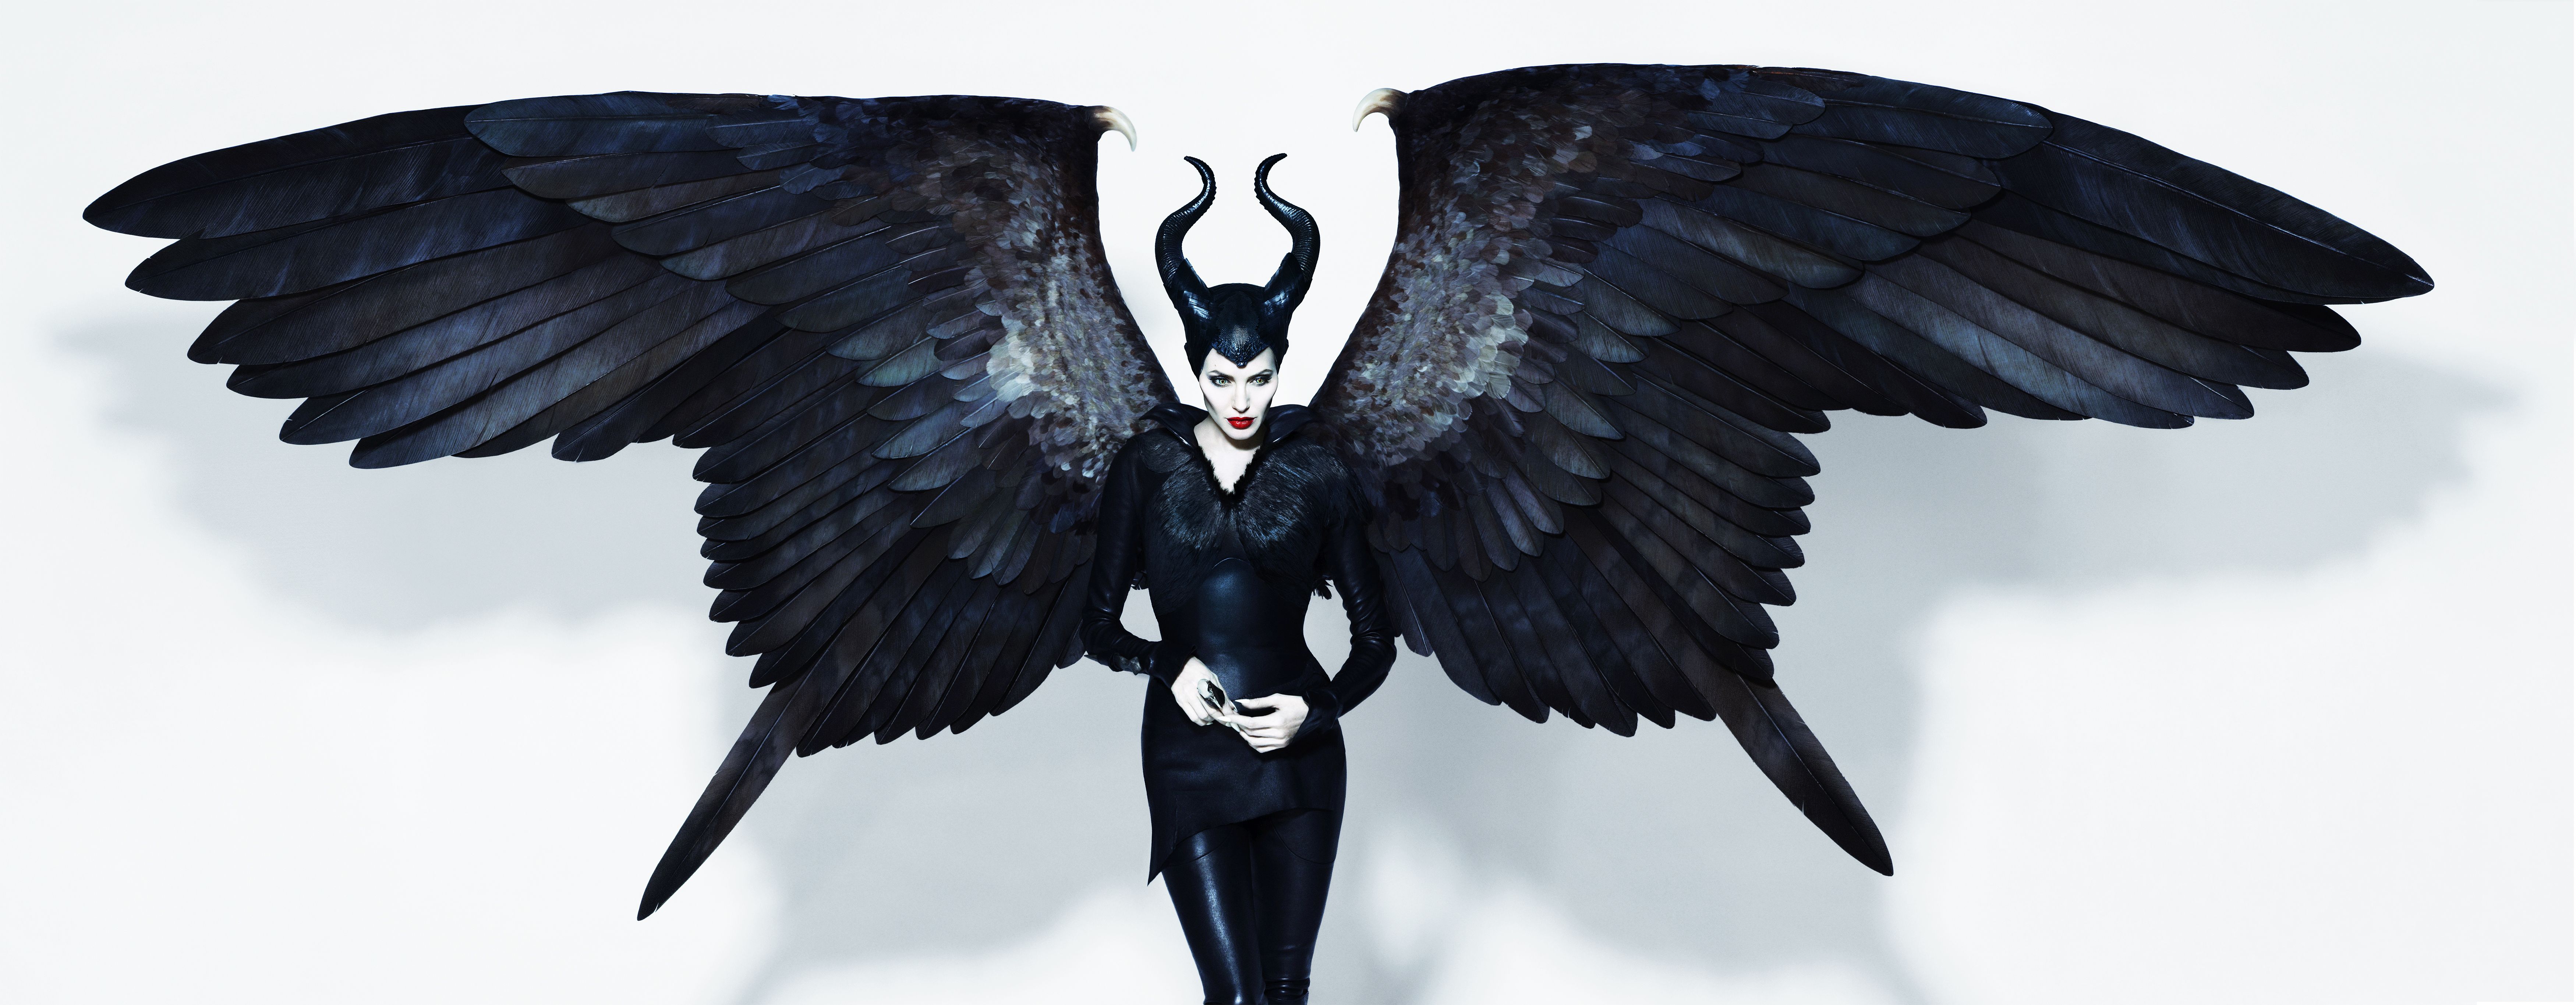 Maleficent cellphone Wallpaper